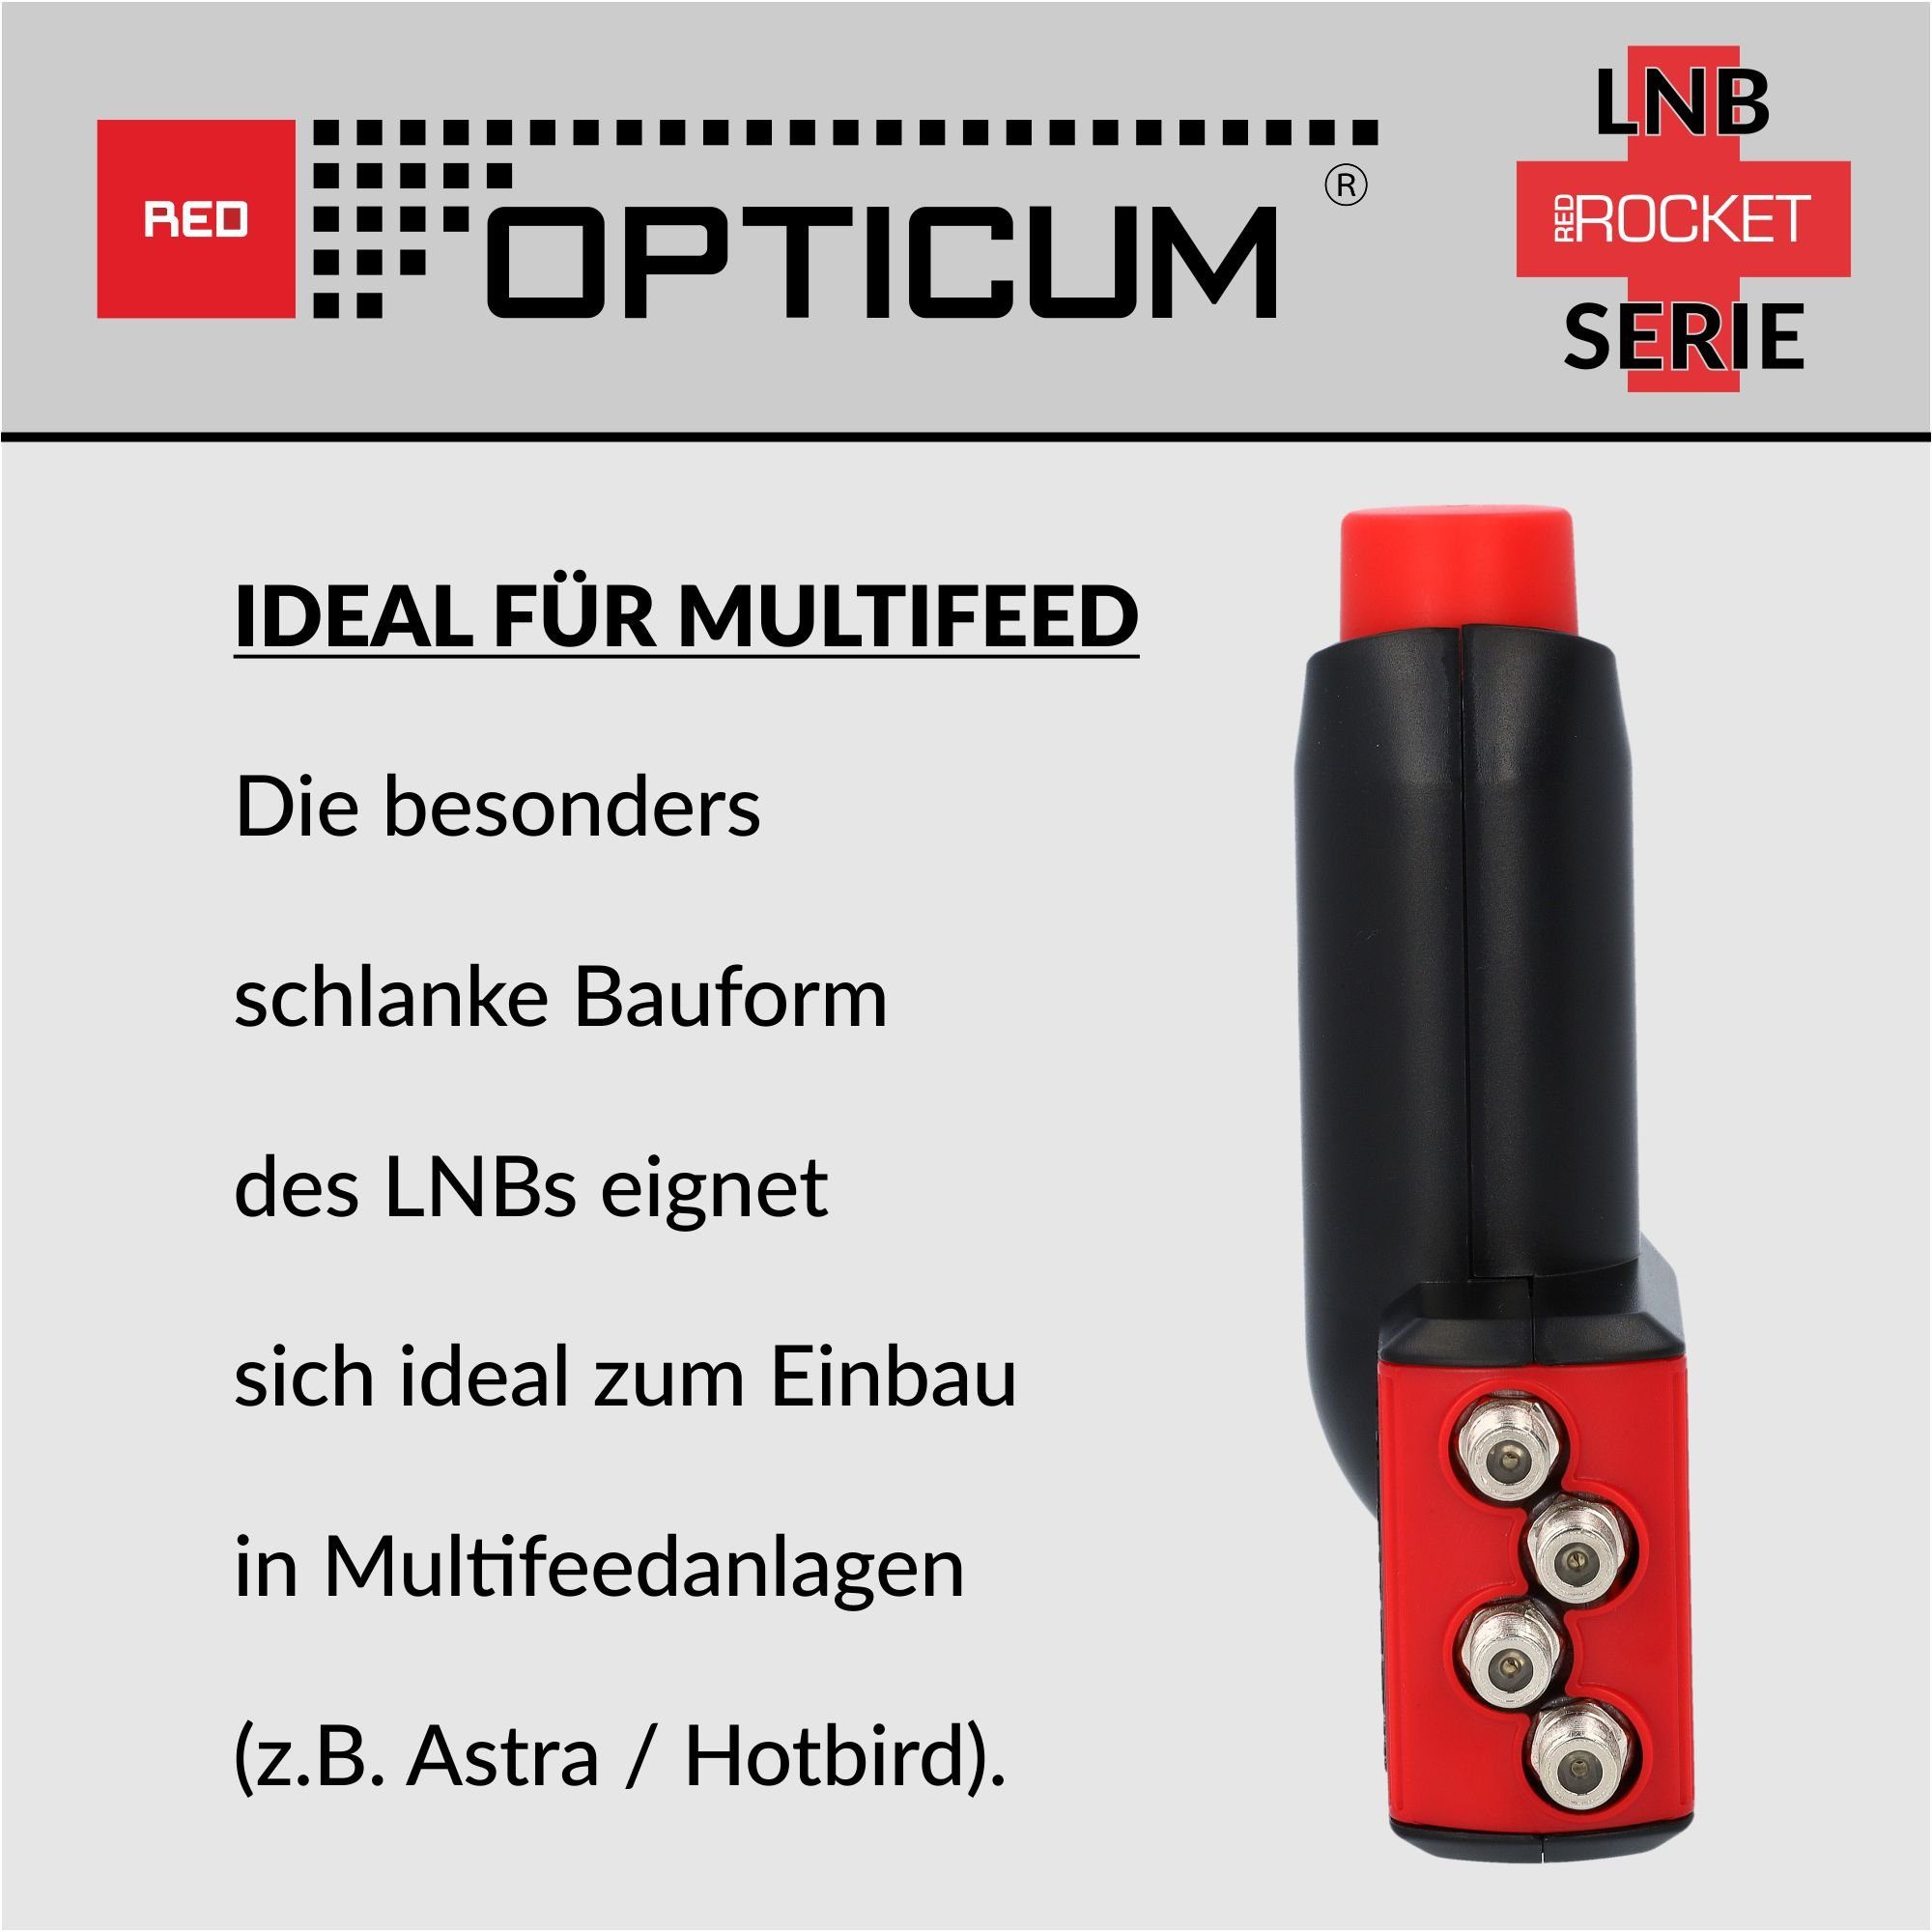 RED OPTICUM Red Rocket Quad Rauschmaß 0.1dB Universal-Quad-LNB & LNB kältebeständig, für Multifeedhalter) LQP-06H (Hitze- - optimal